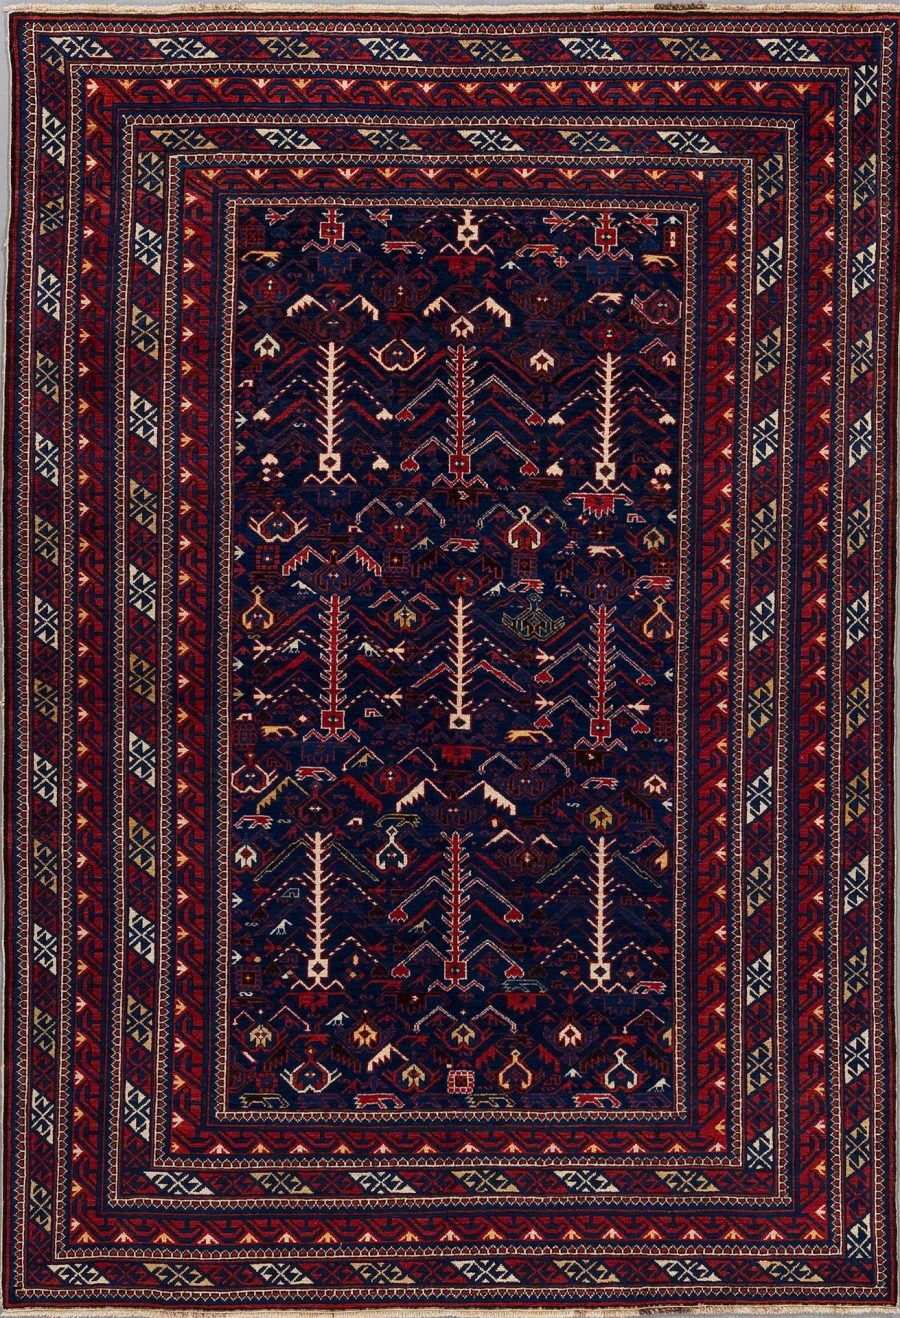 Traditioneller handgeknüpfter Teppich mit komplexem Muster aus geometrischen Formen und stilisierten Blumen in Dunkelblau, Rot, Weiß und Akzenten in weiteren Farben, umgeben von mehrfachen Bordüren mit ähnlichen Mustern.